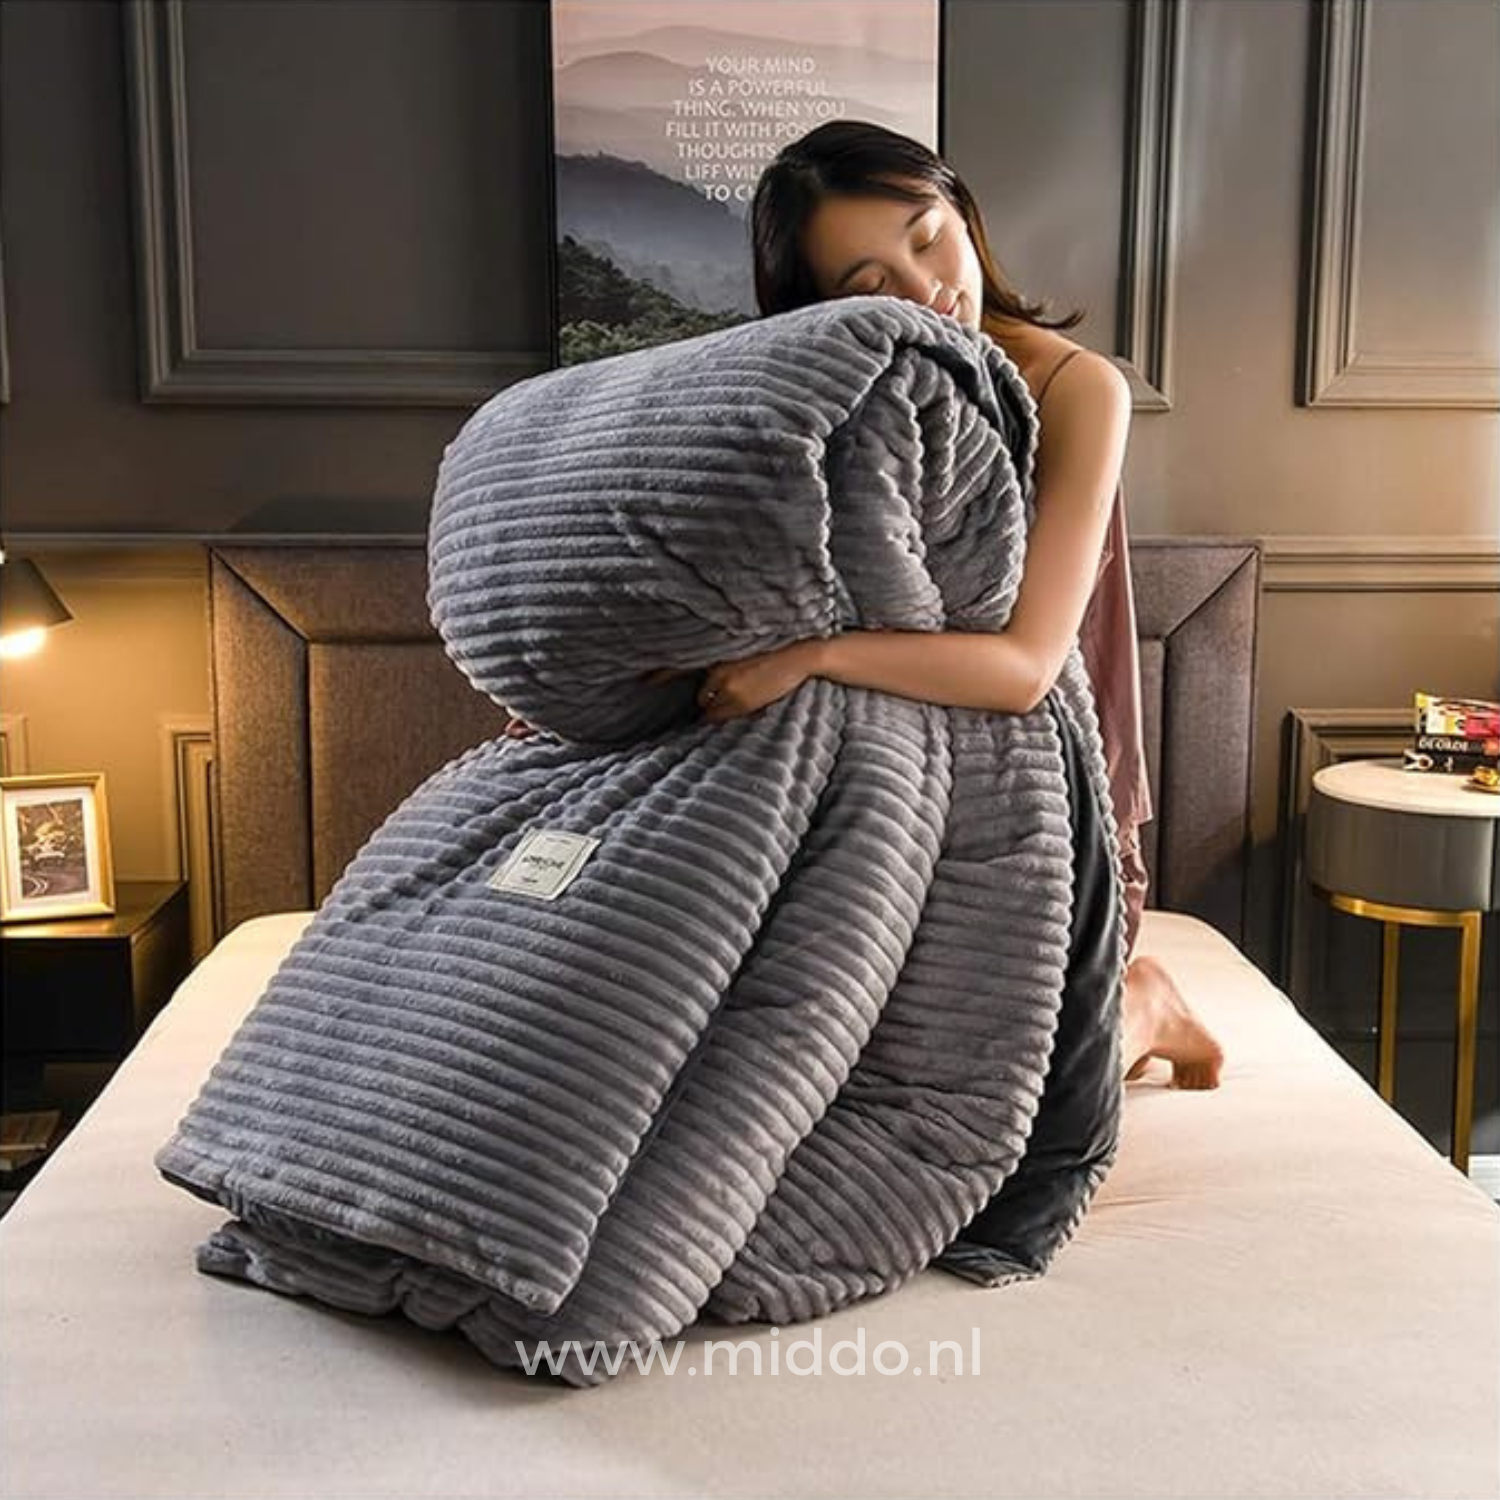 Vrouw met opgevouwen grijs dekbedovertrek met dekbed erin  op een bed